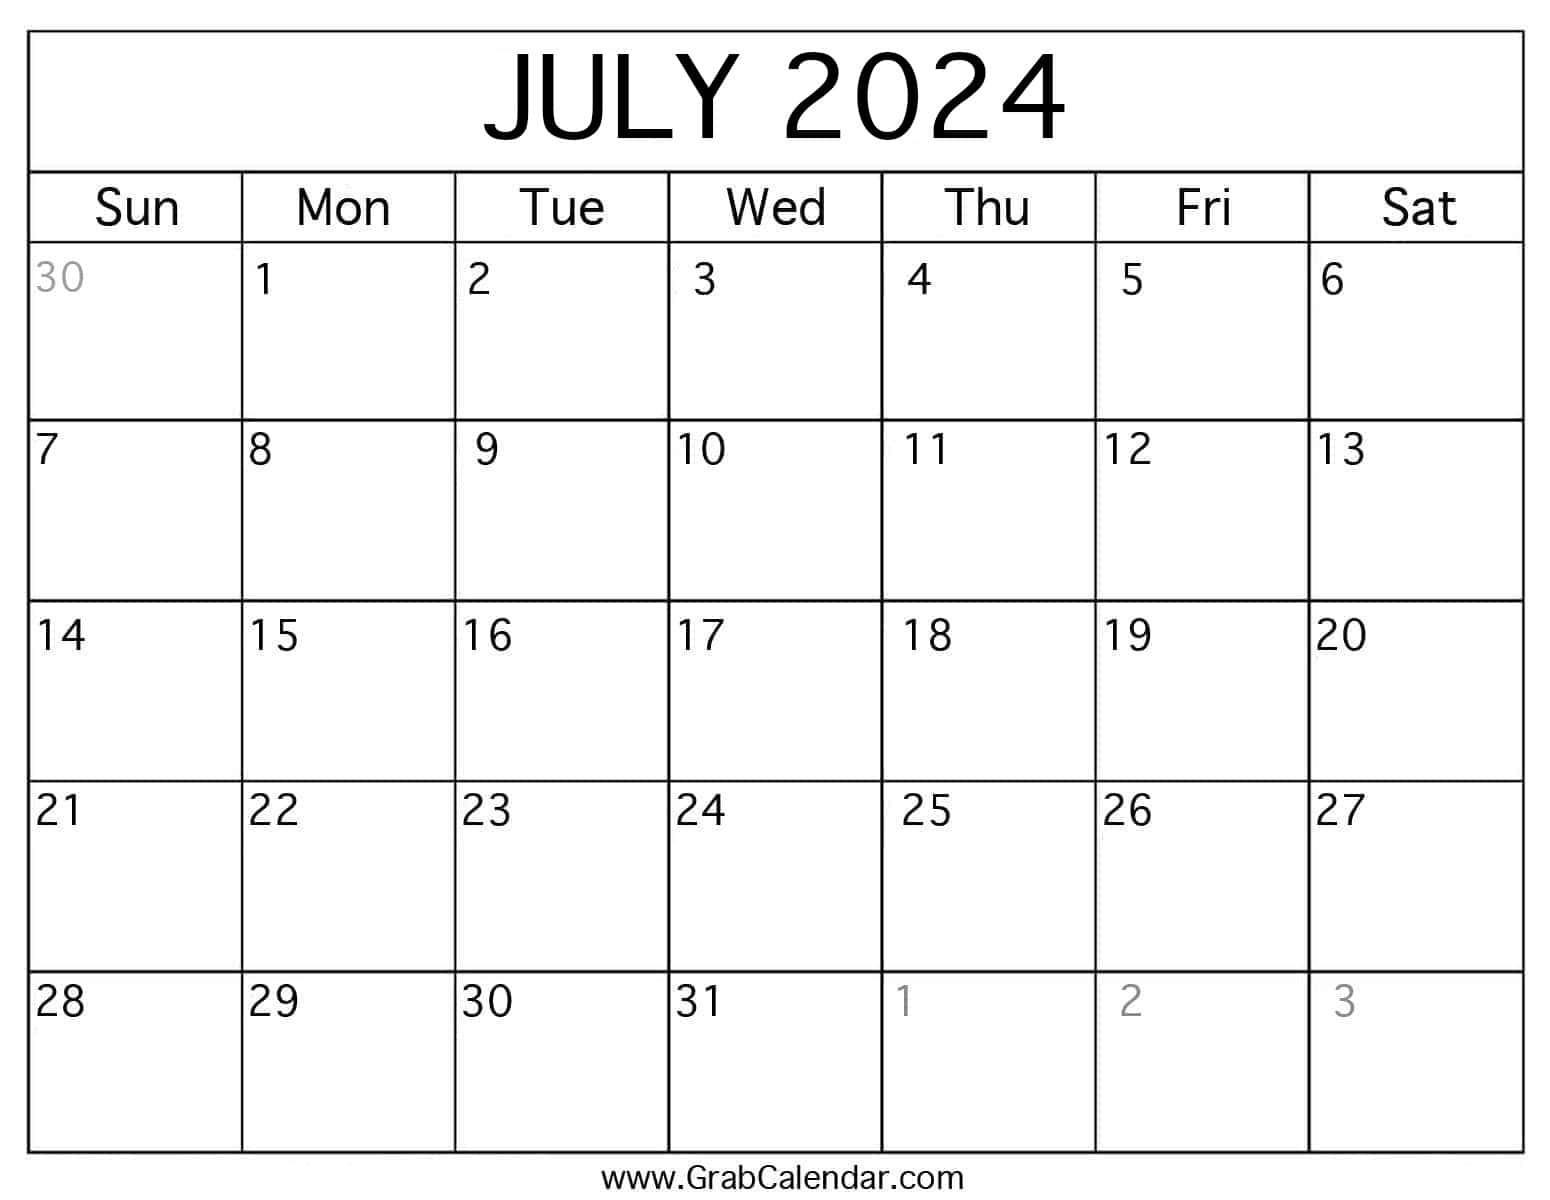 Printable July 2024 Calendar in 13 July 2024 Calendar Printable